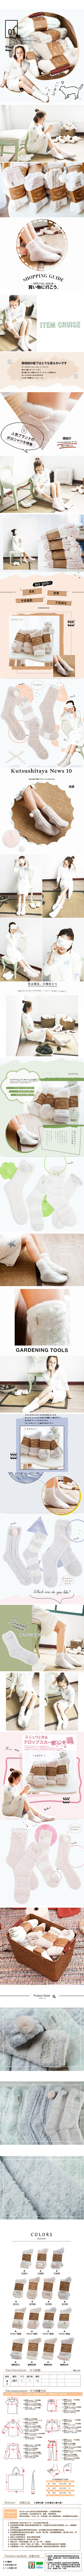 Melek 襪子類 (共15色)【A01161117-0301~0315】女襪舒眠款厚襪/保暖襪/襪子